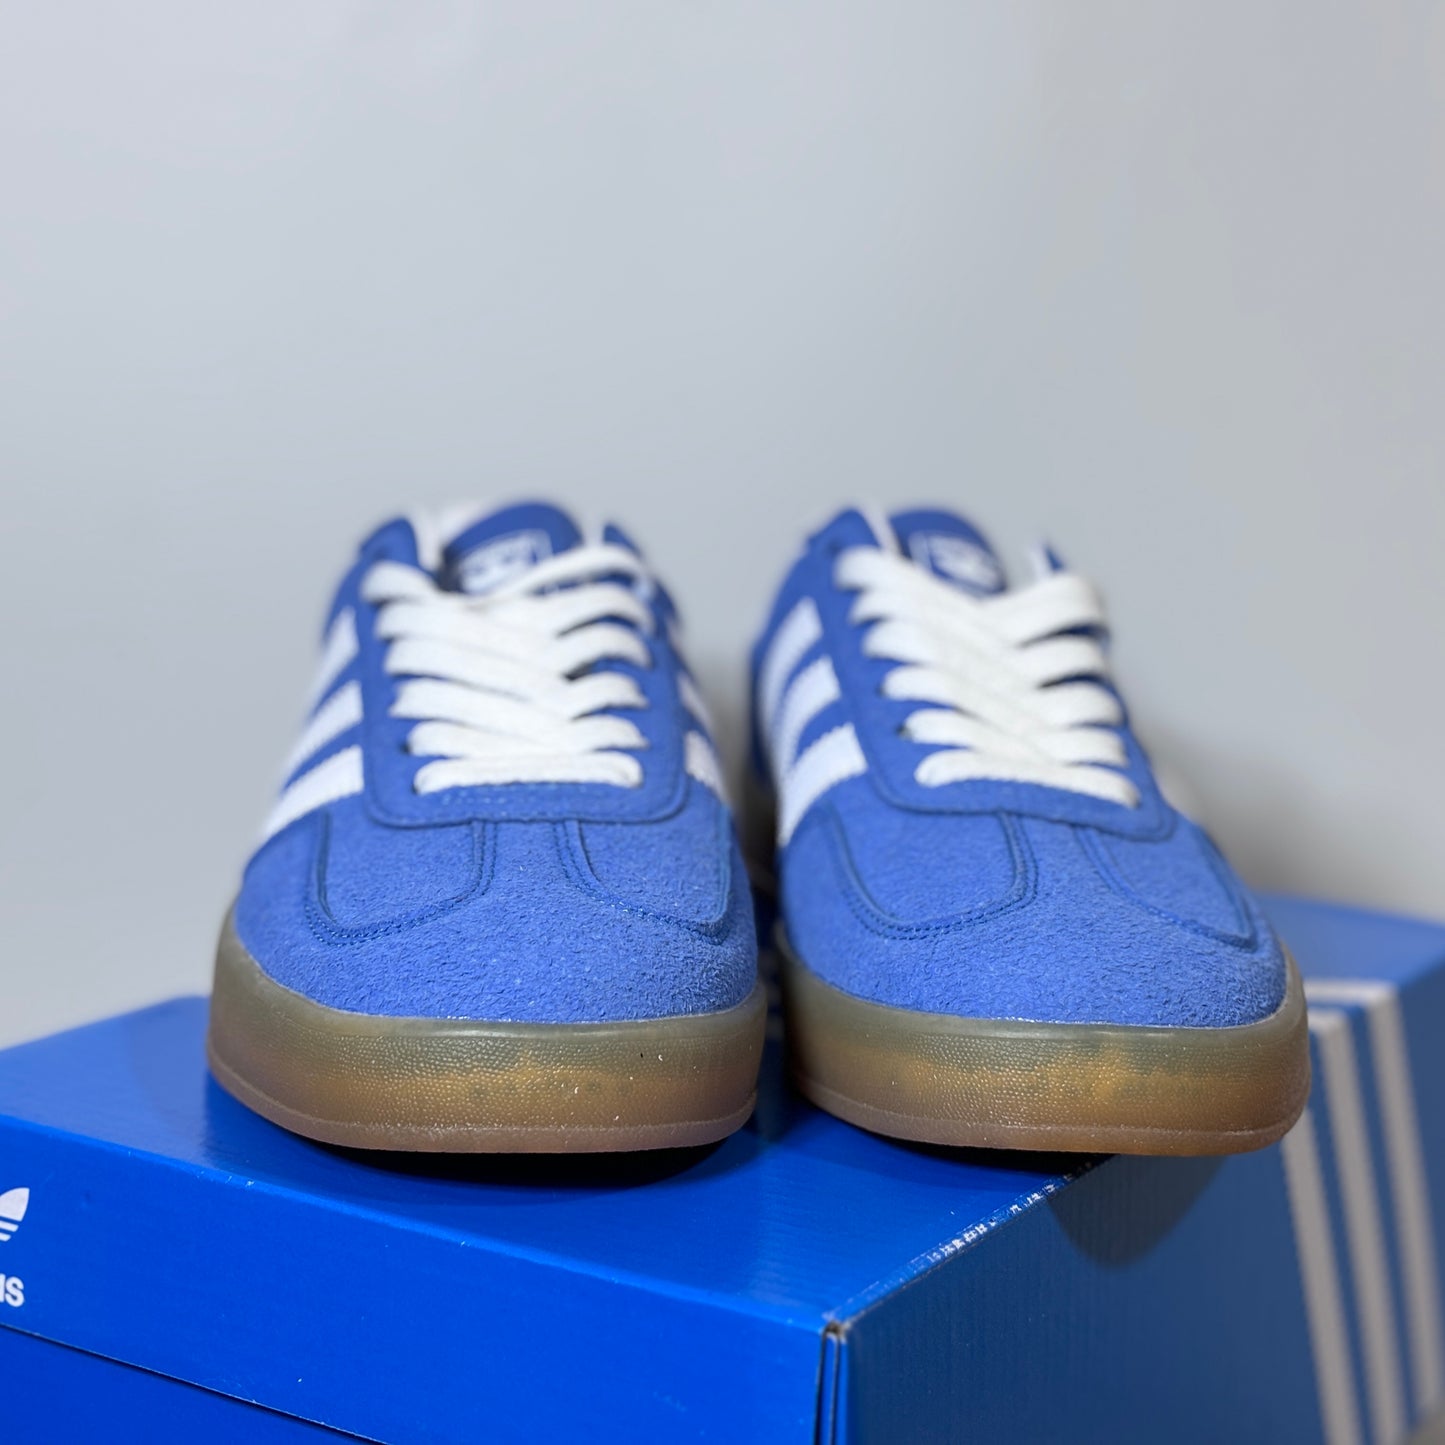 Adidas Originals Gazelle "Blue"